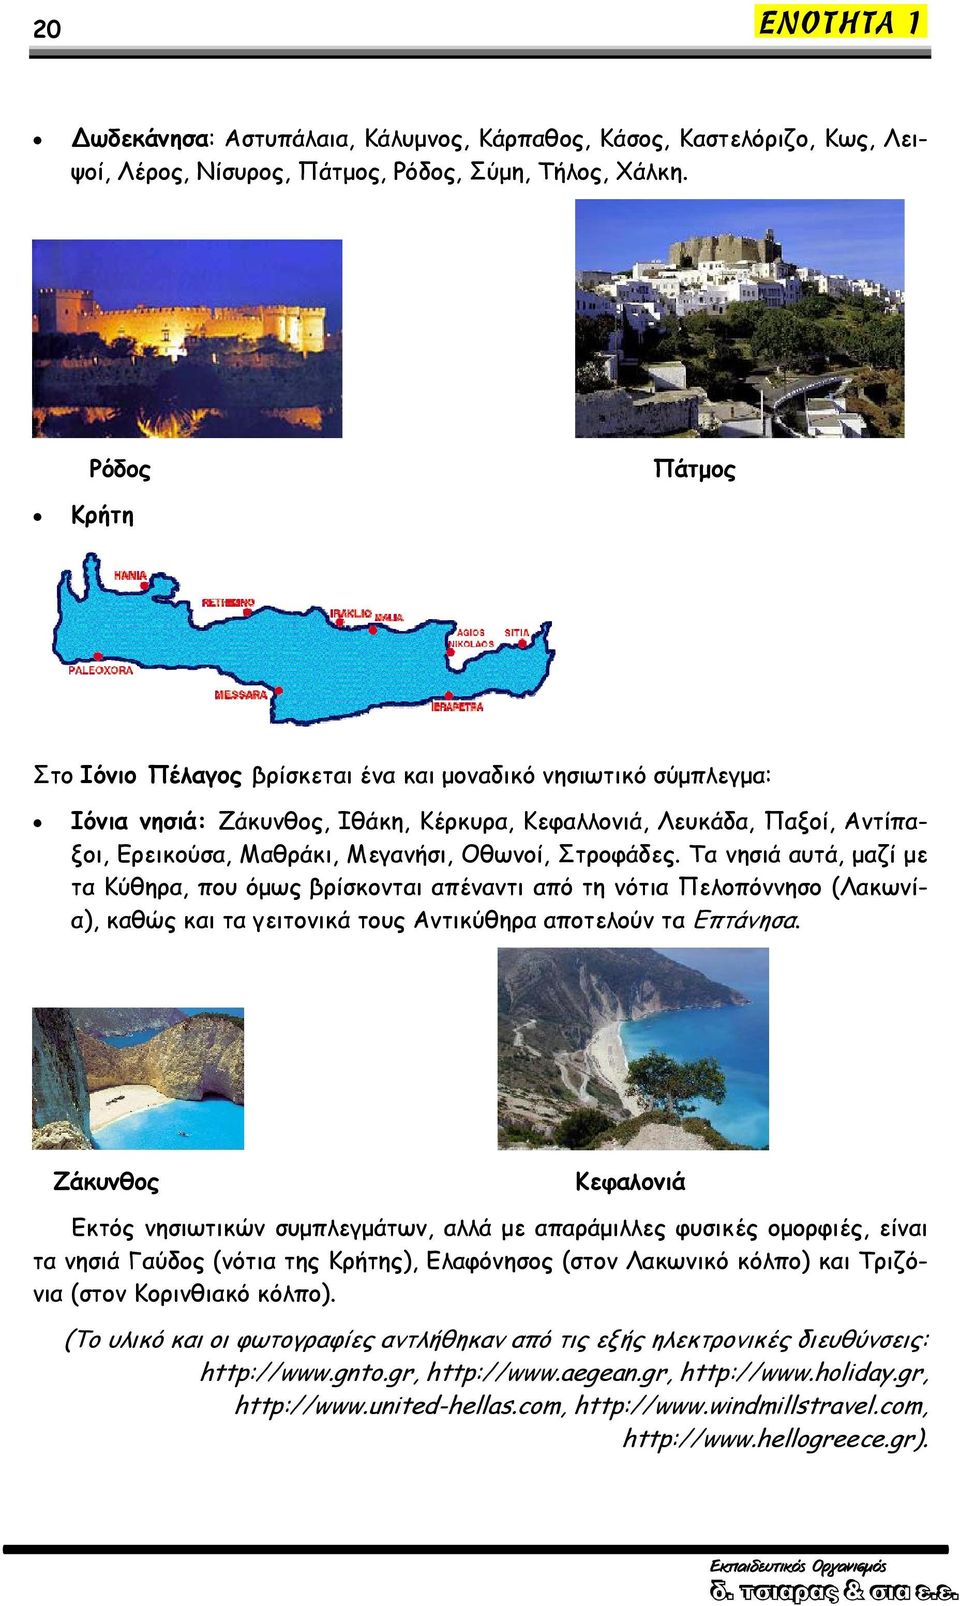 Οθωνοί, Στροφάδες. Τα νησιά αυτά, μαζί με τα Κύθηρα, που όμως βρίσκονται απέναντι από τη νότια Πελοπόννησο (Λακωνία), καθώς και τα γειτονικά τους Αντικύθηρα αποτελούν τα Επτάνησα.